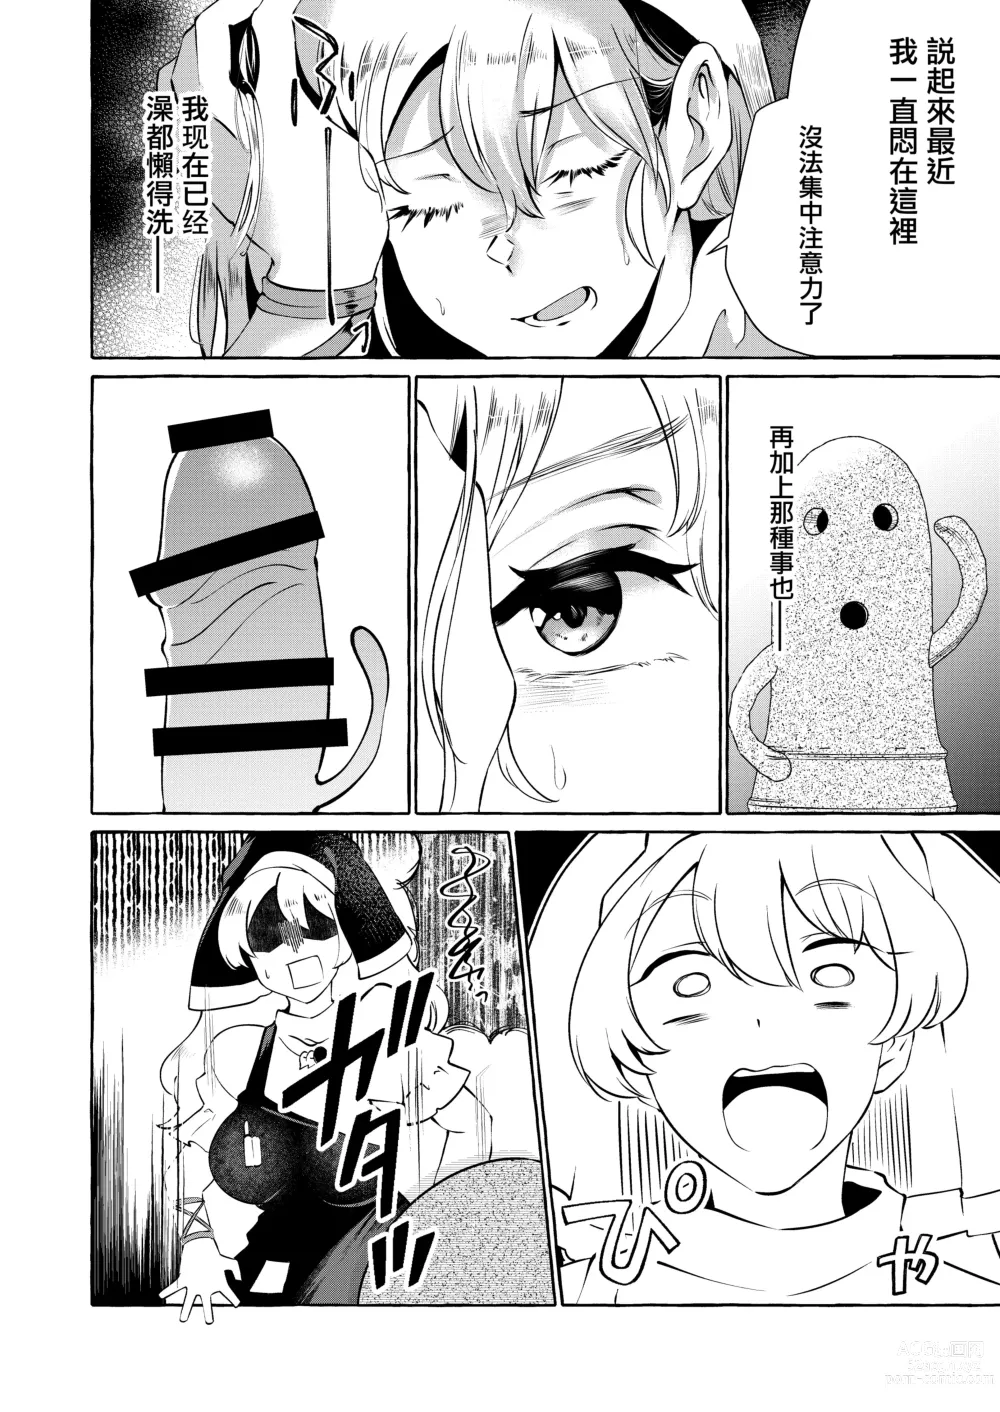 Page 3 of doujinshi 將肢體托付於妄想